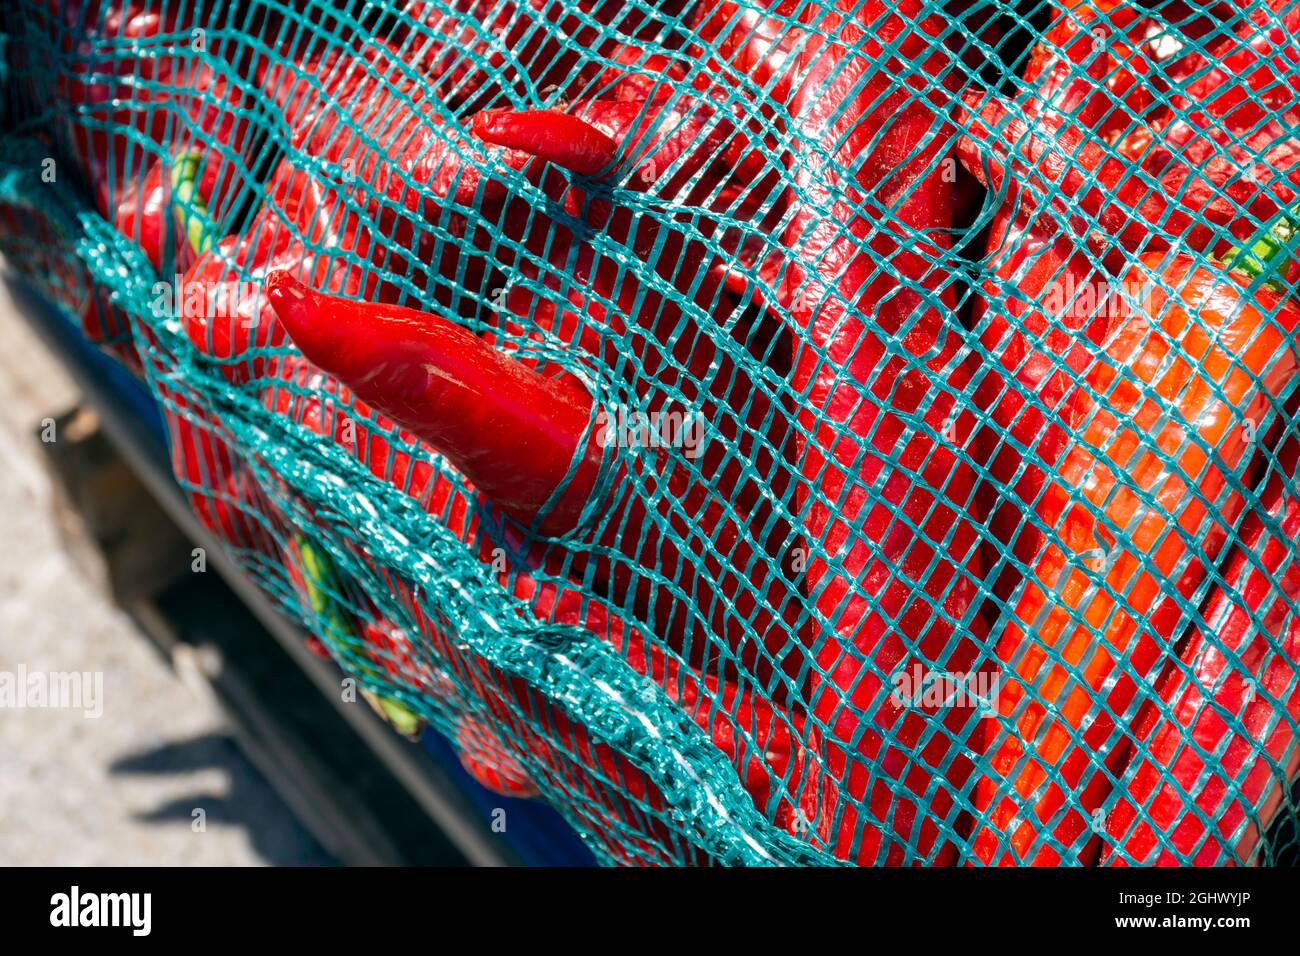 Résumé alimentaire des piments rouges chauds dans un sac en maille turquoise vu sur le marché. Banque D'Images